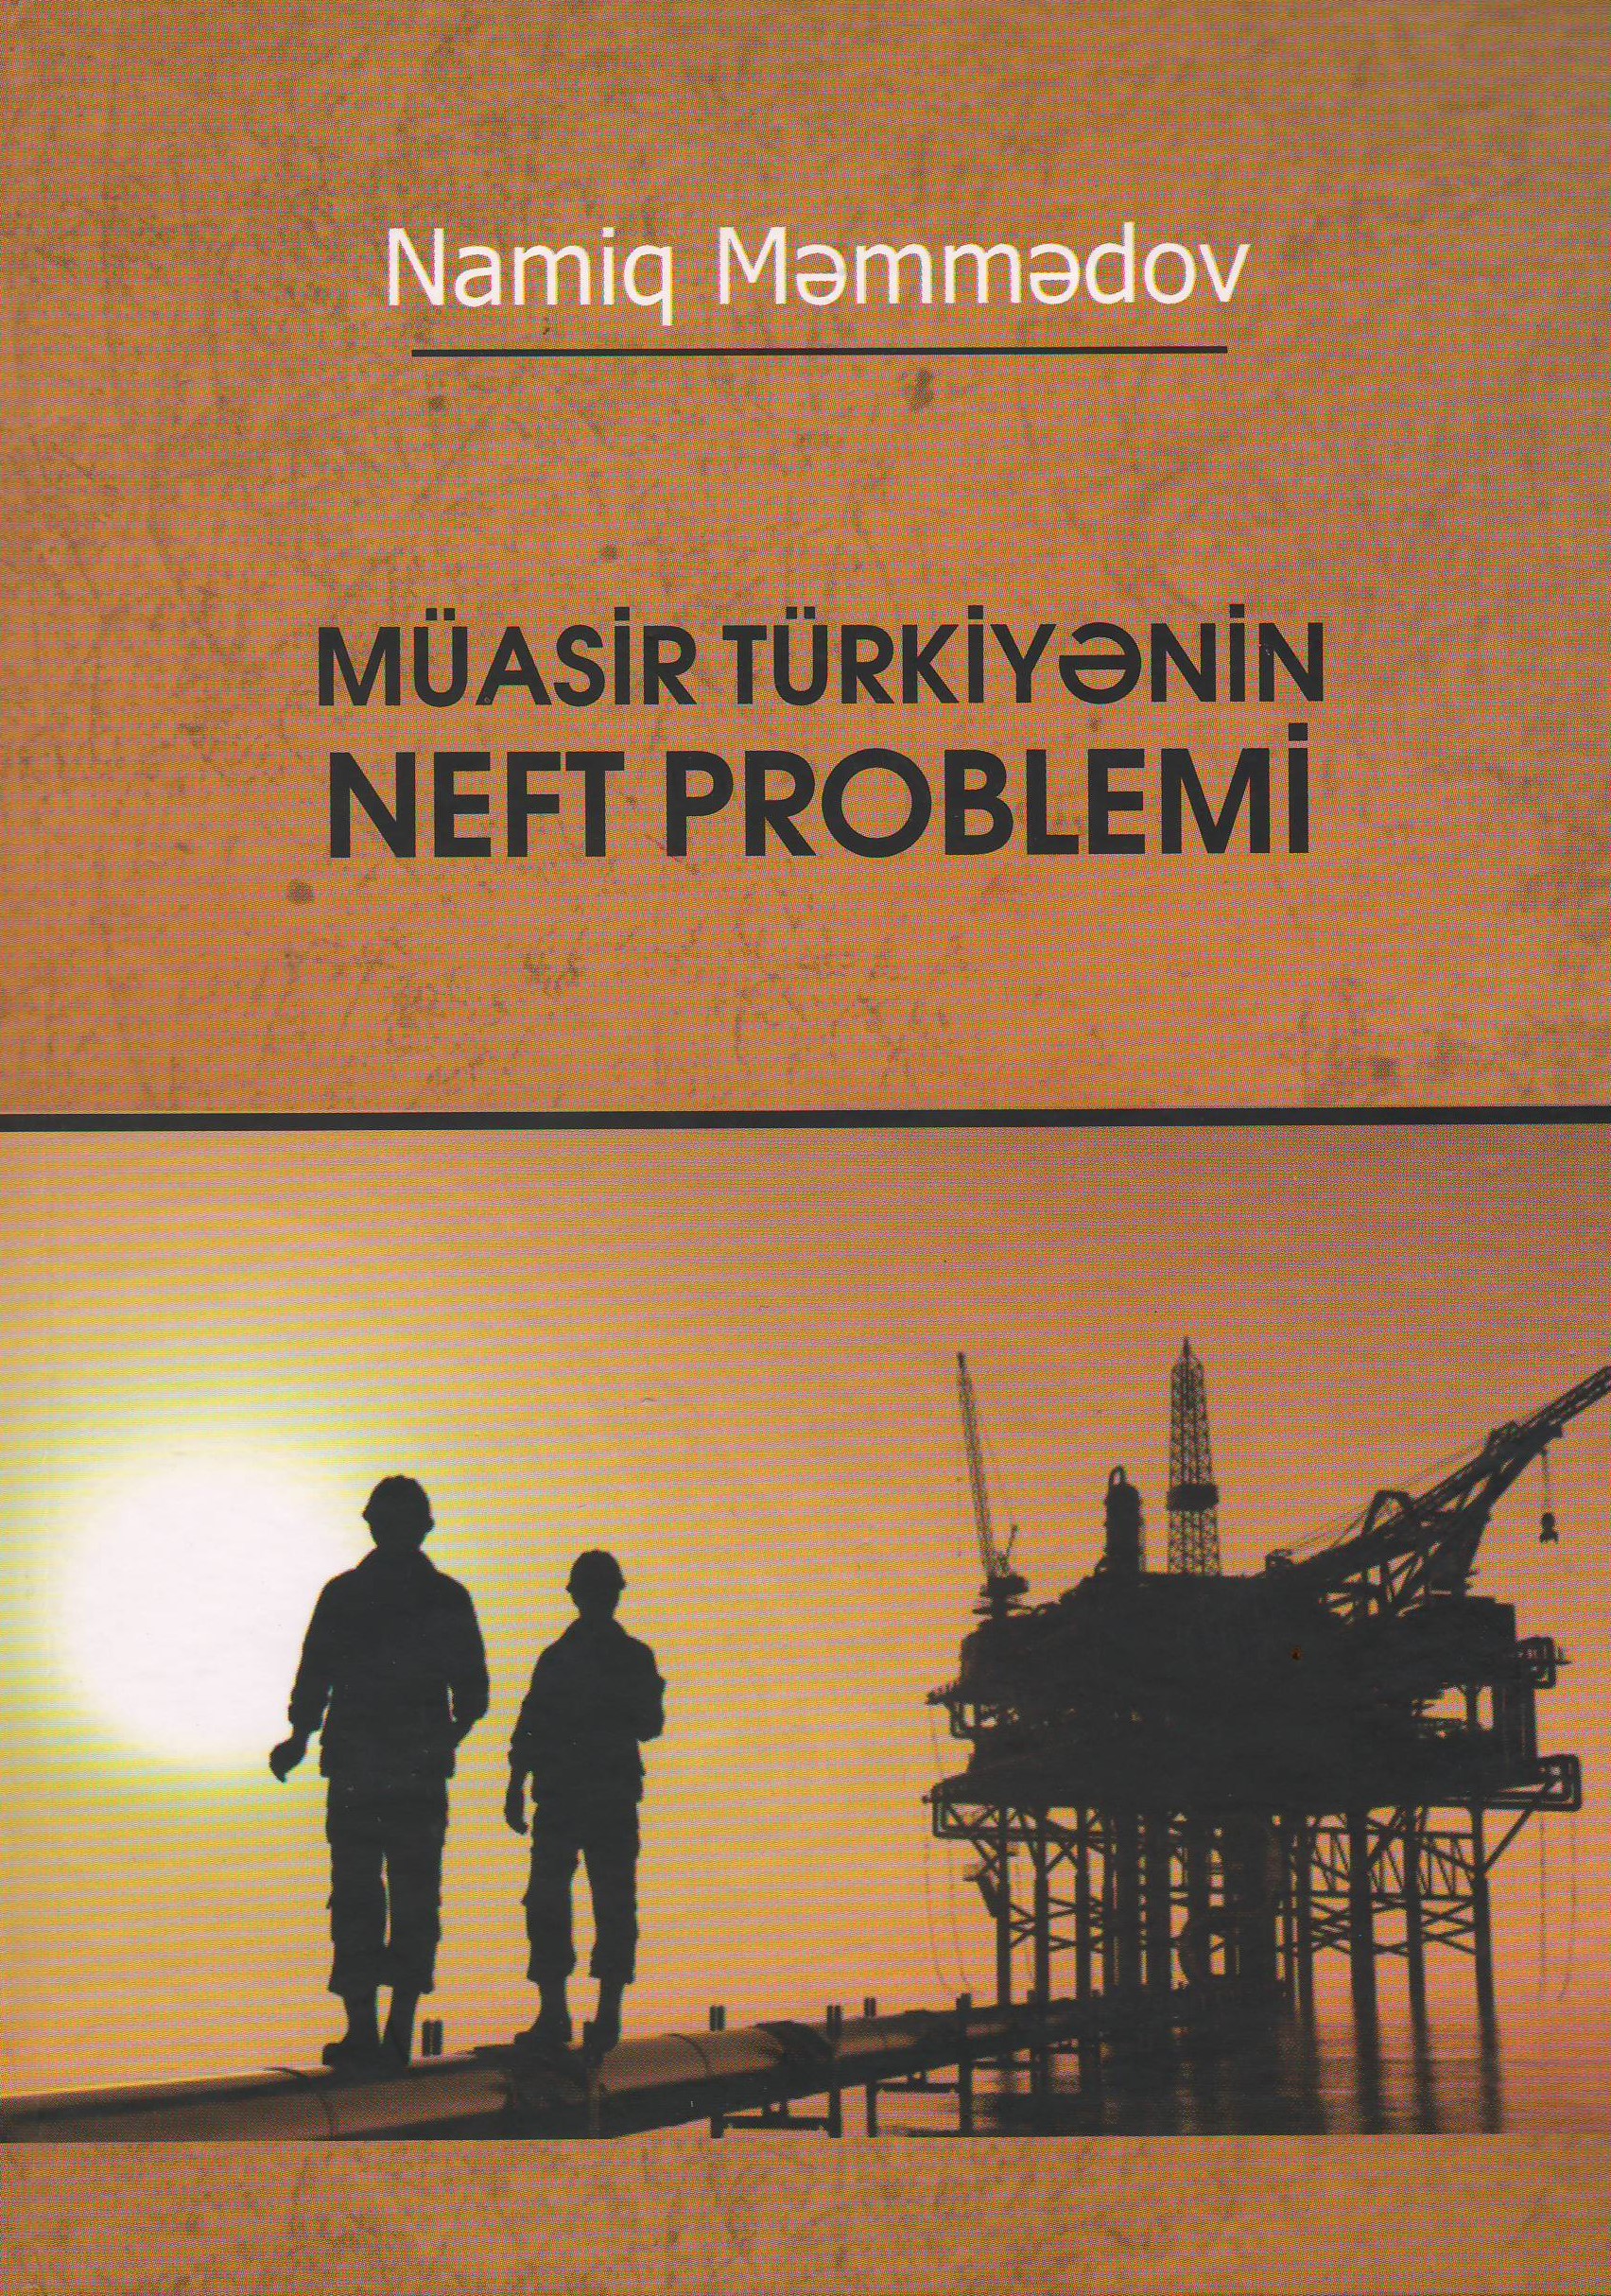 Şərqşünaslıq İnstitutunda “Müasir Türkiyənin neft problemi” kitabı çapdan çıxıb